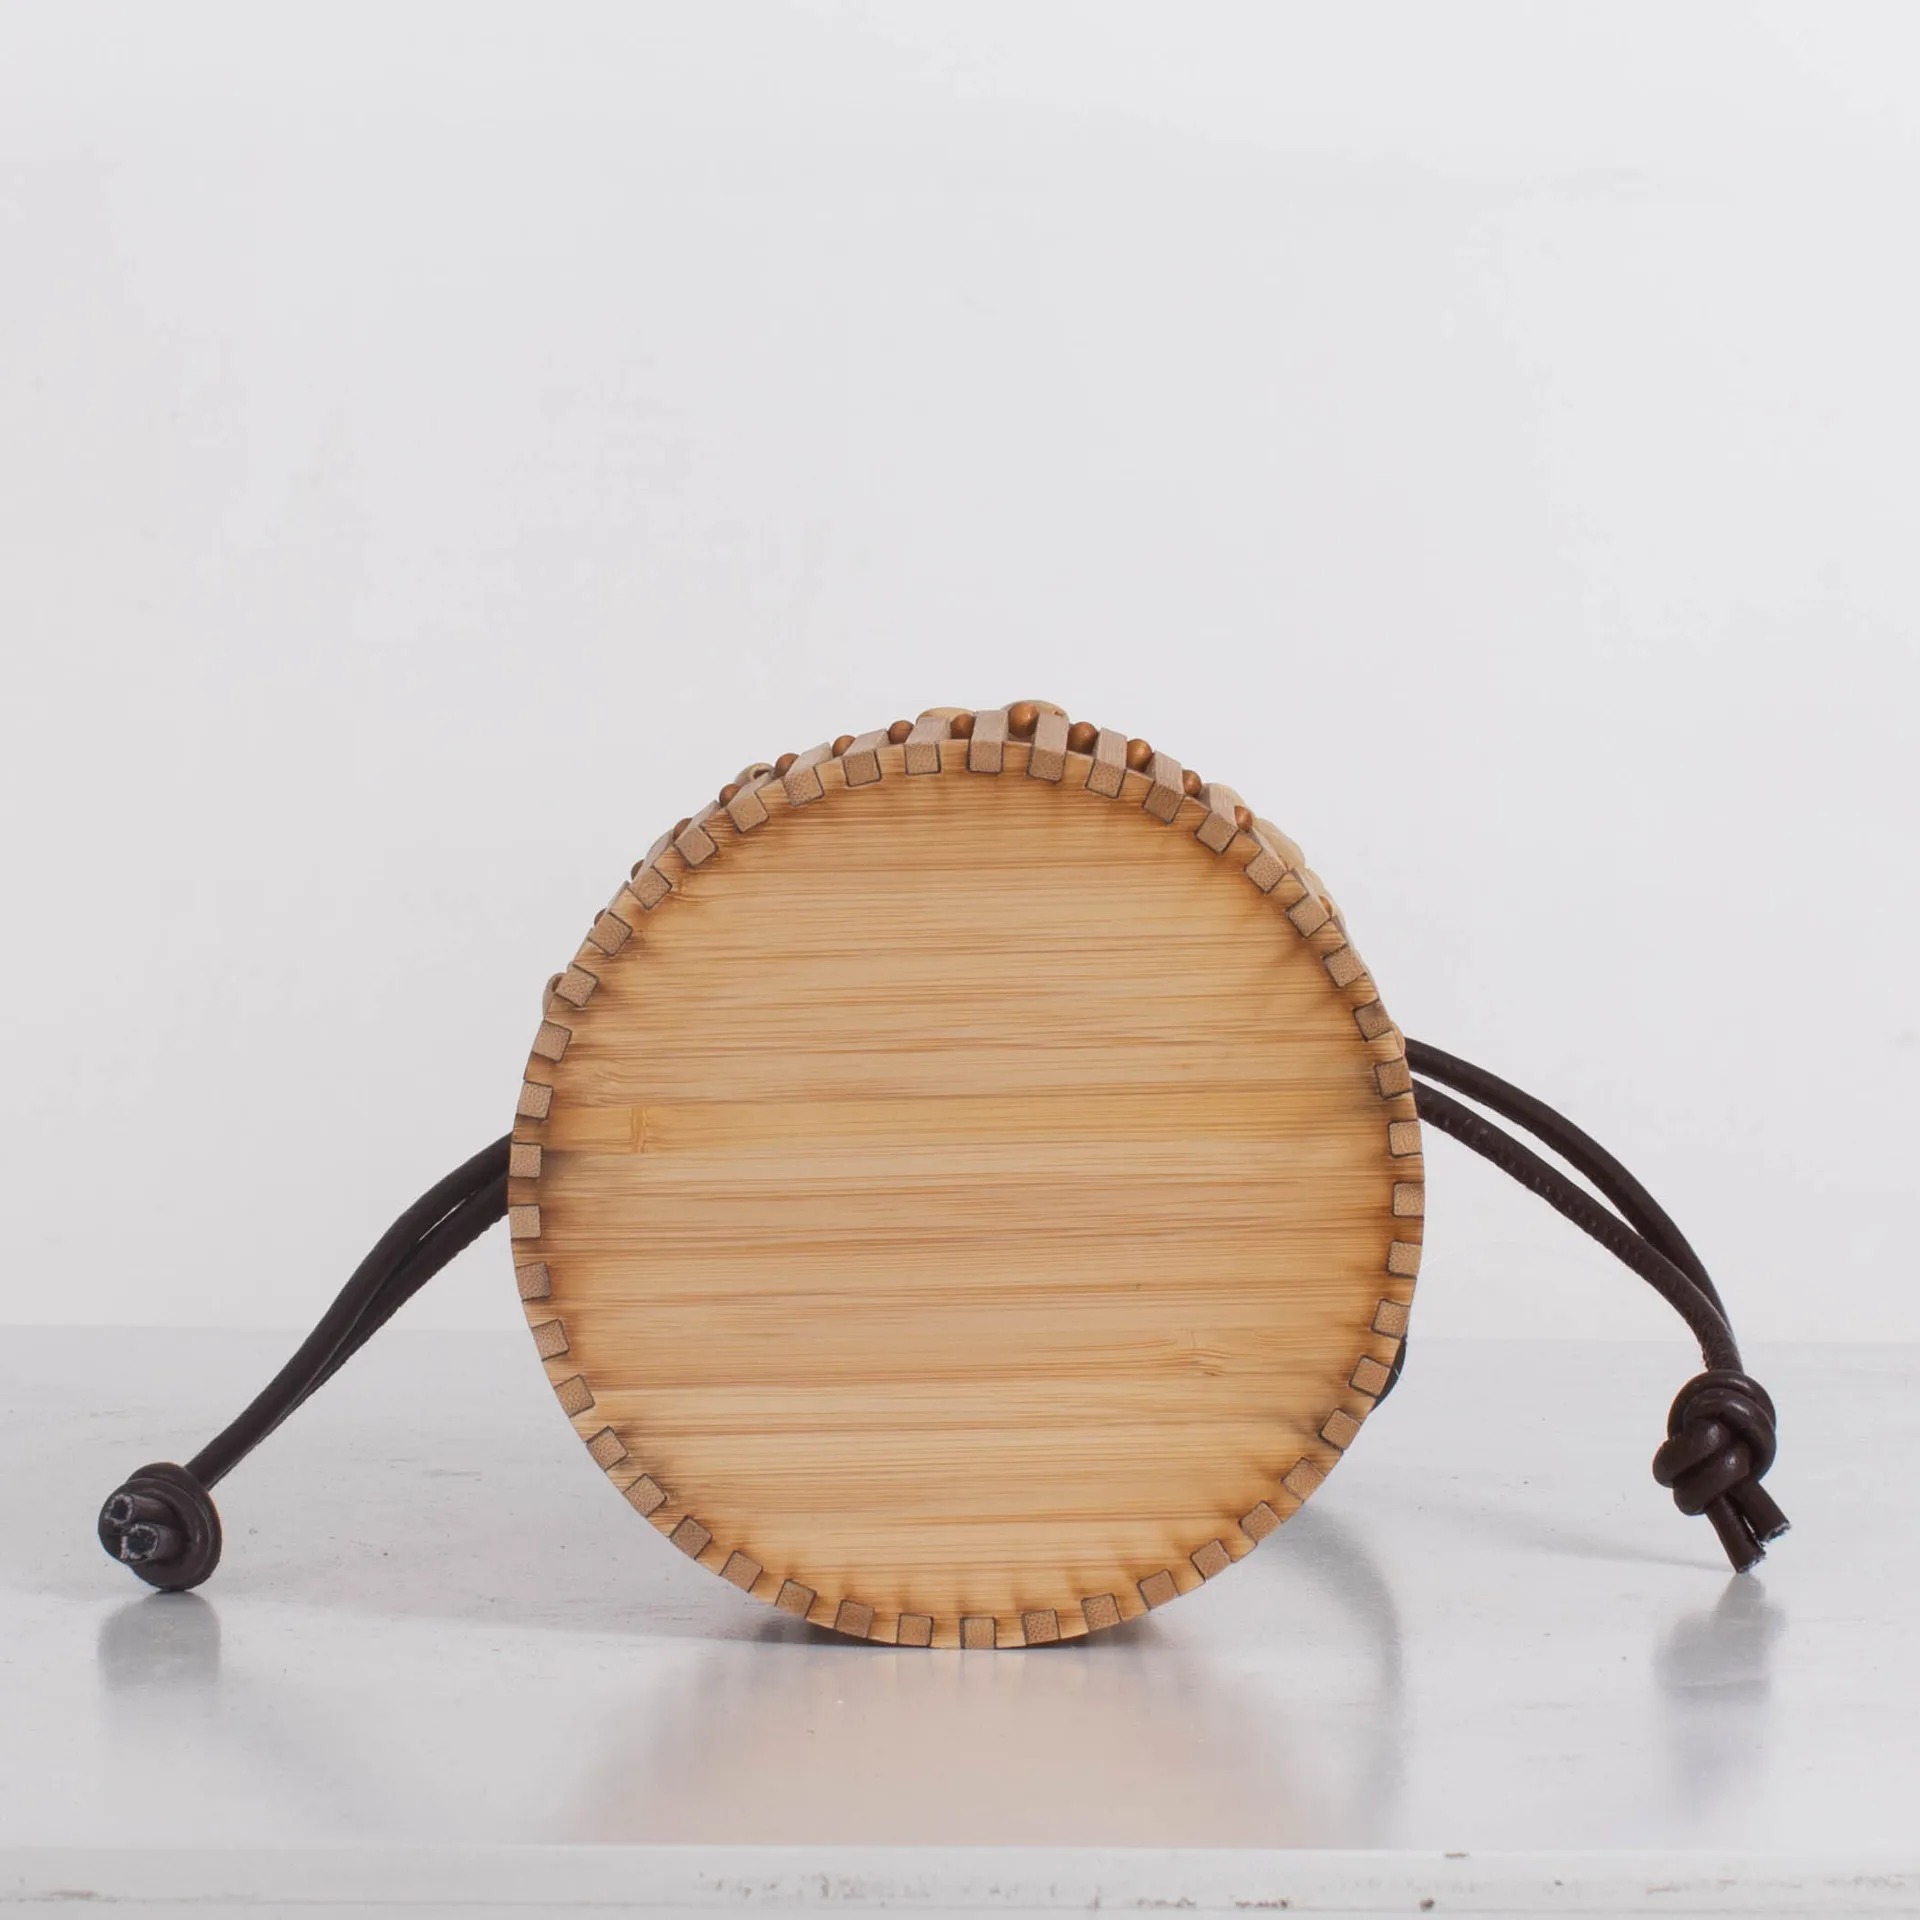 Бамбуковая плетеная Сумка, женская сумка-мессенджер, нишевая сумка для моря, для отдыха соломенный, тканая сумка в китайском стиле, бамбуков... от AliExpress RU&CIS NEW